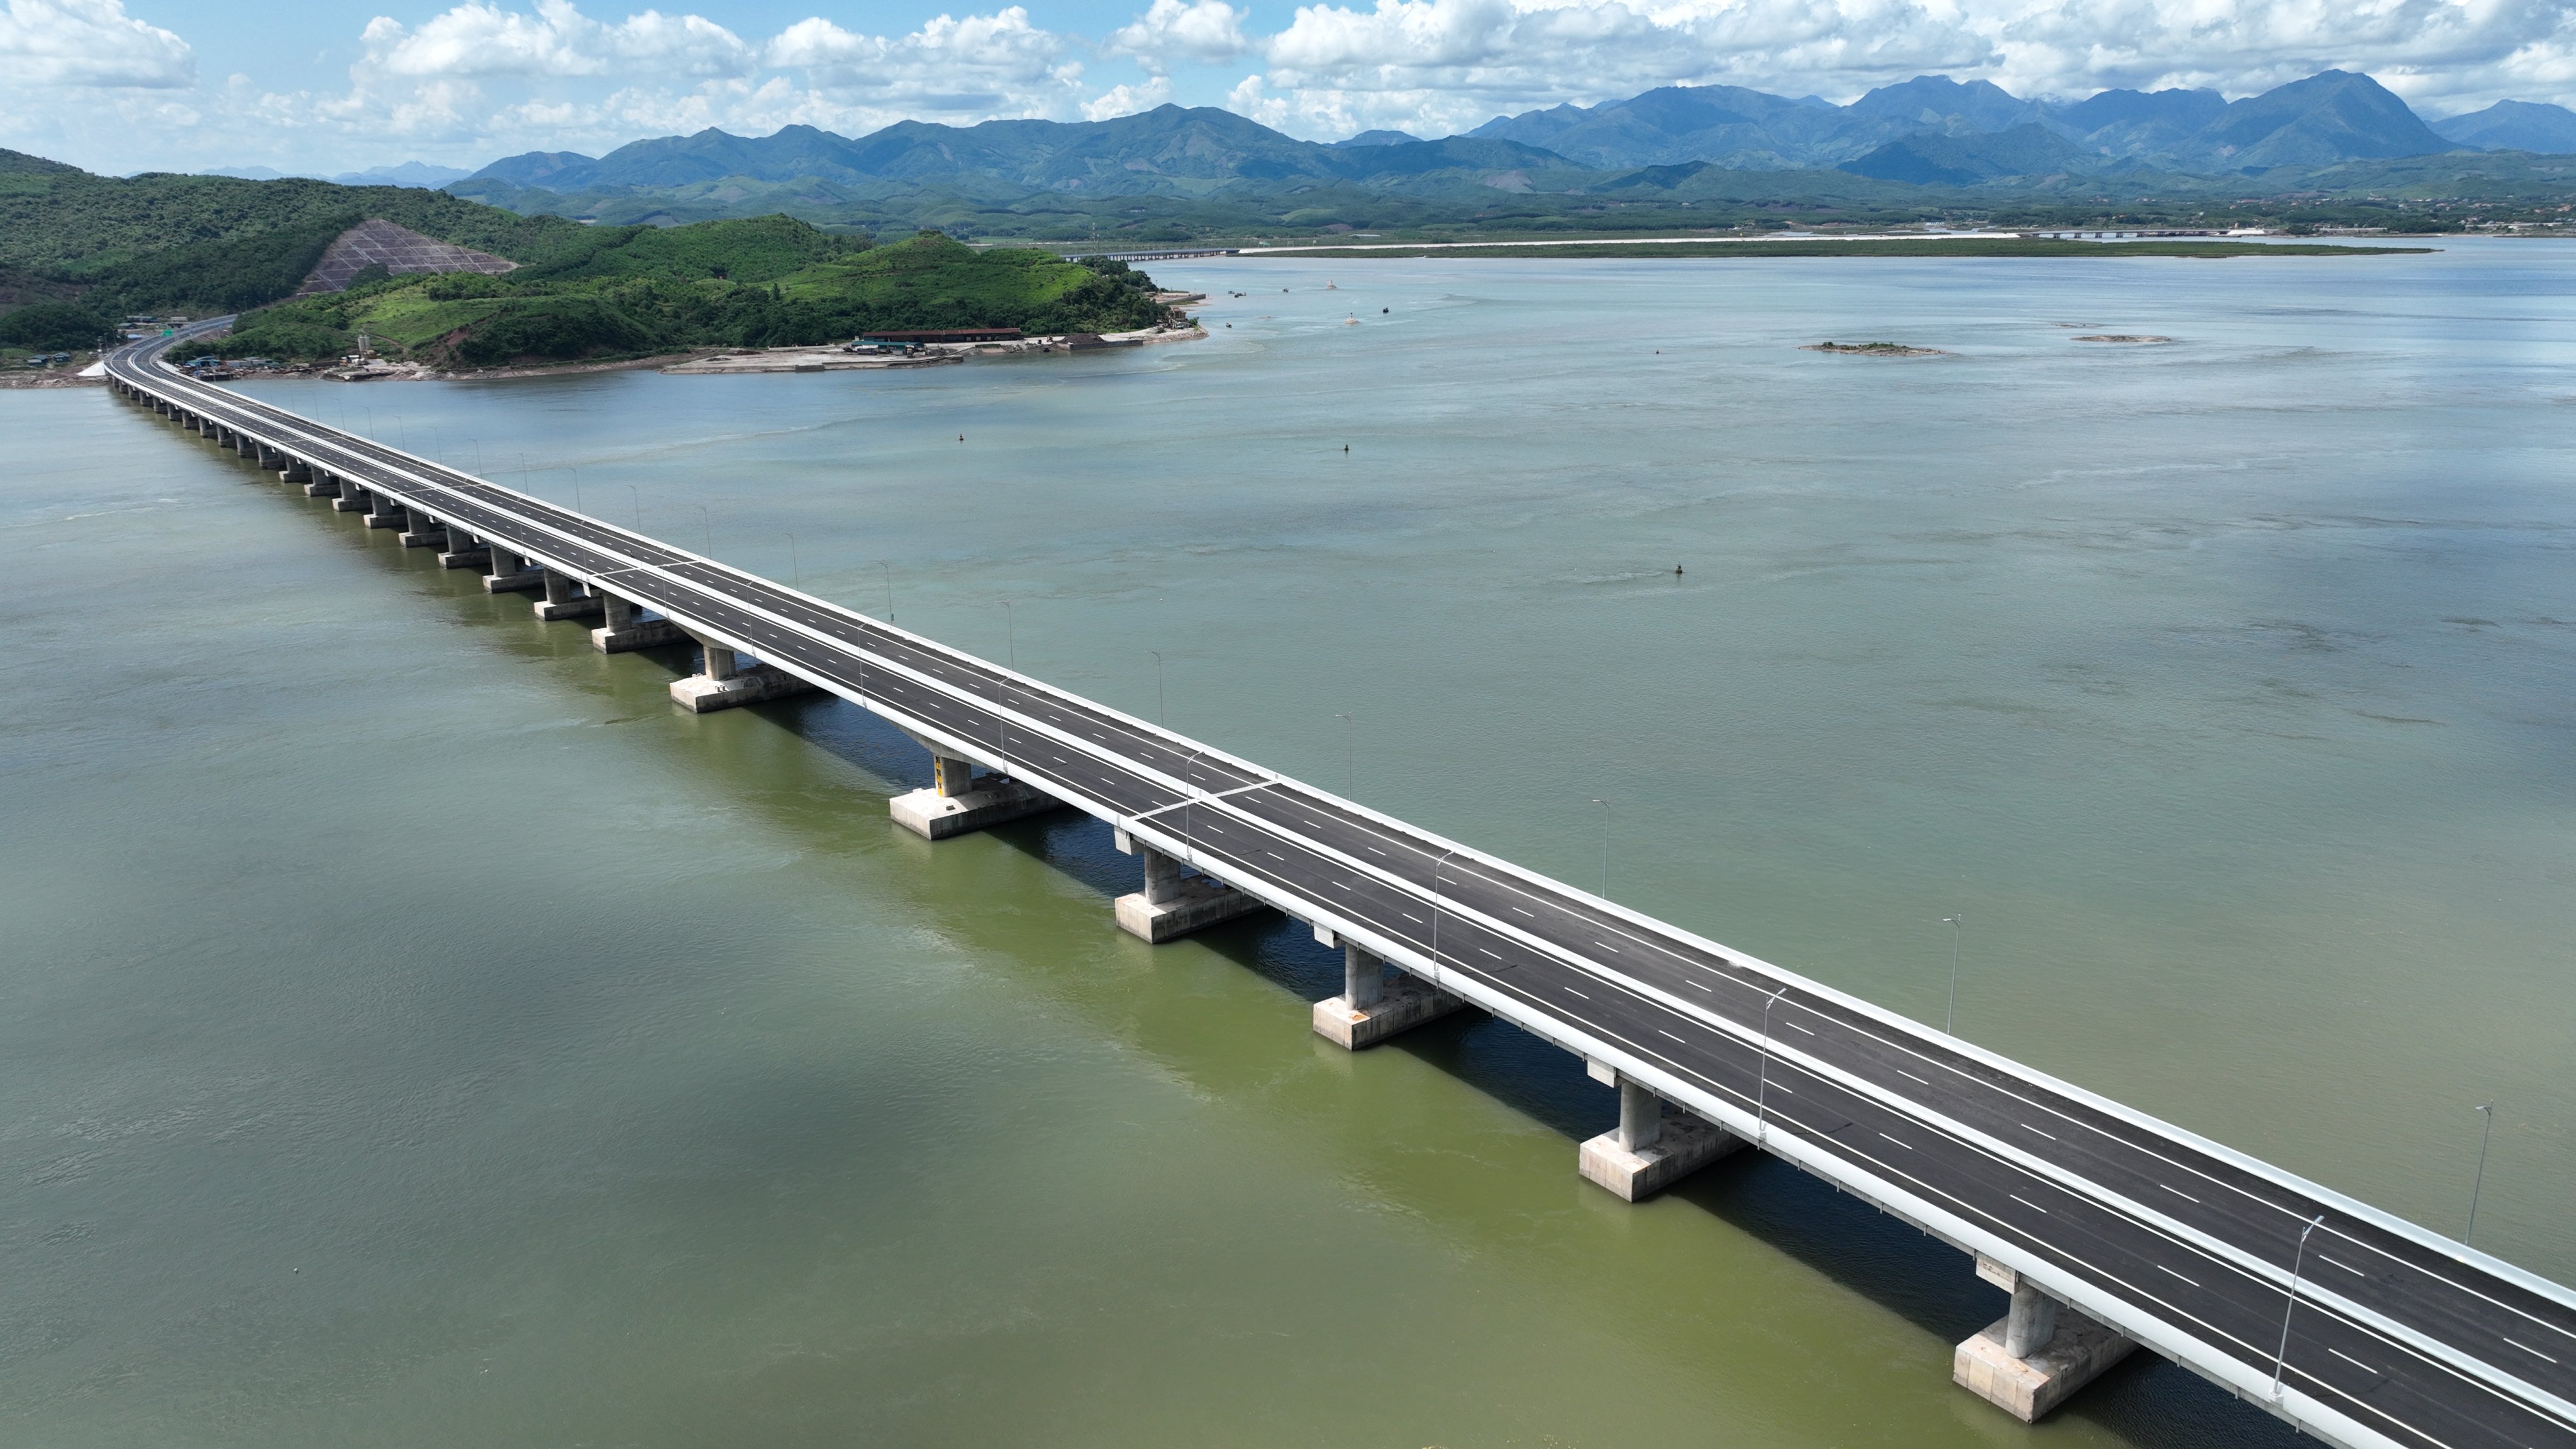 Cao tốc Vân Đồn – Móng Cái là một trong những cao tốc sở hữu nhiều cây cầu vượt biển, vượt sông suối với 32 cây cầu trên tuyến chính, với tổng chiều dài là hơn 7,9km (chiếm 10% tổng chiều dài tuyến)